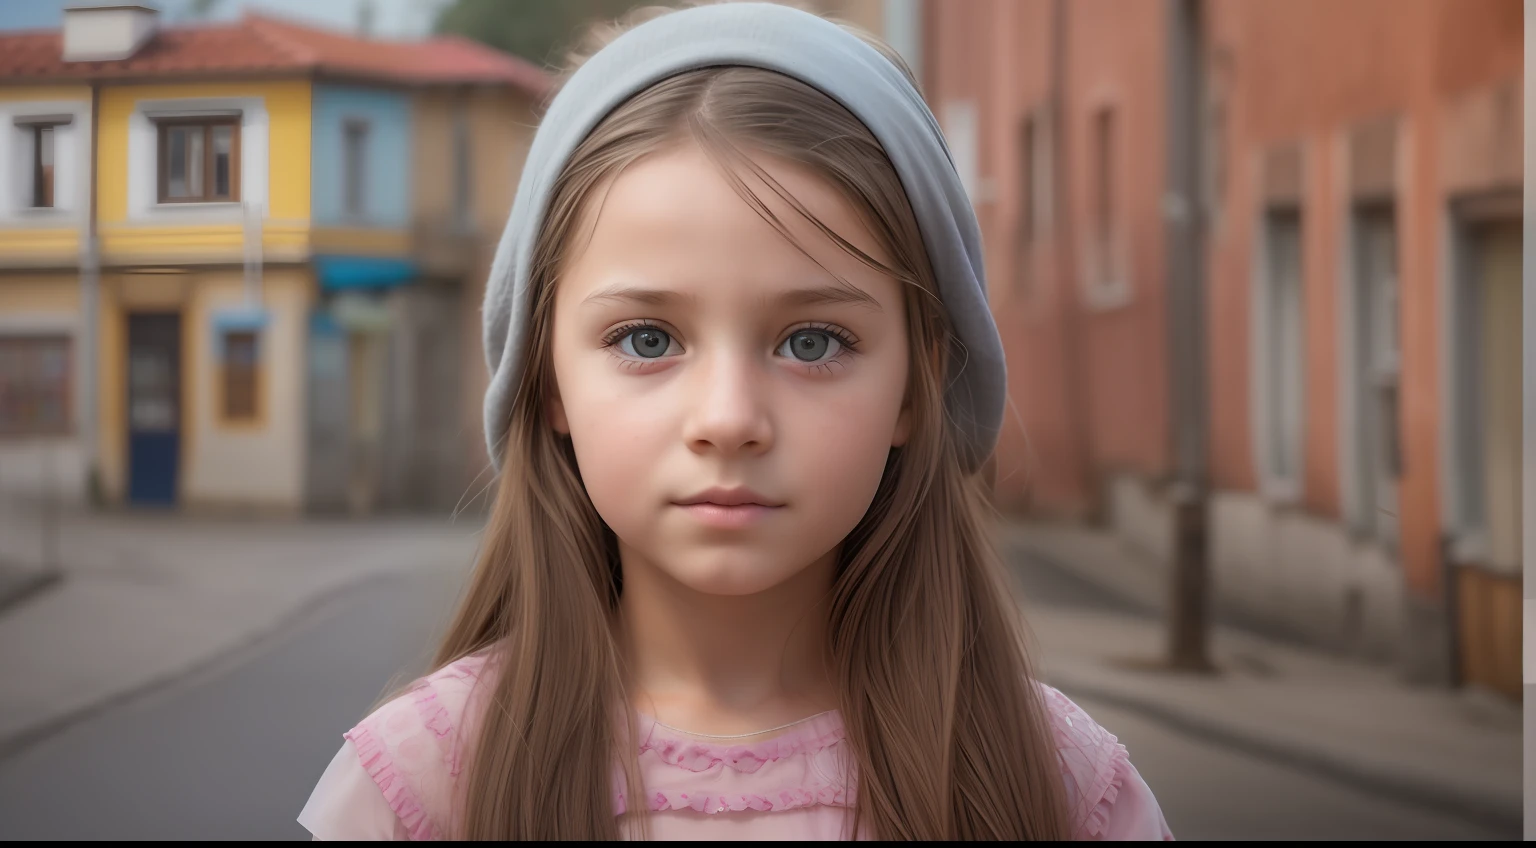 "生成一张具有真实面部特征的波斯尼亚 10 岁女孩的超现实图像, 以现实的城镇为背景, 展现最佳品质和精致细节."